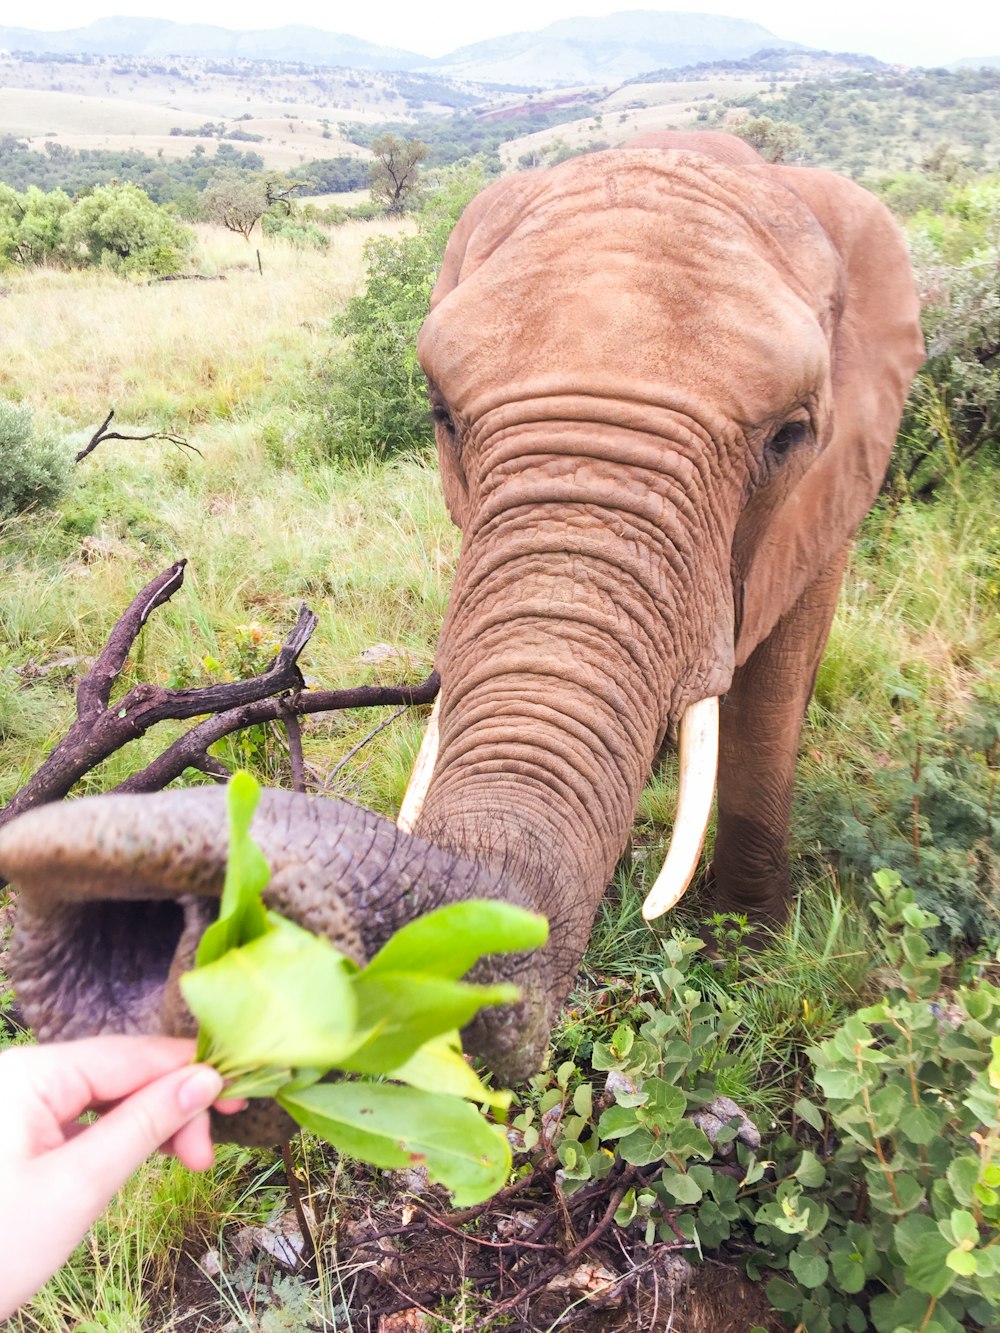 elefante marrón comiendo planta verde durante el día